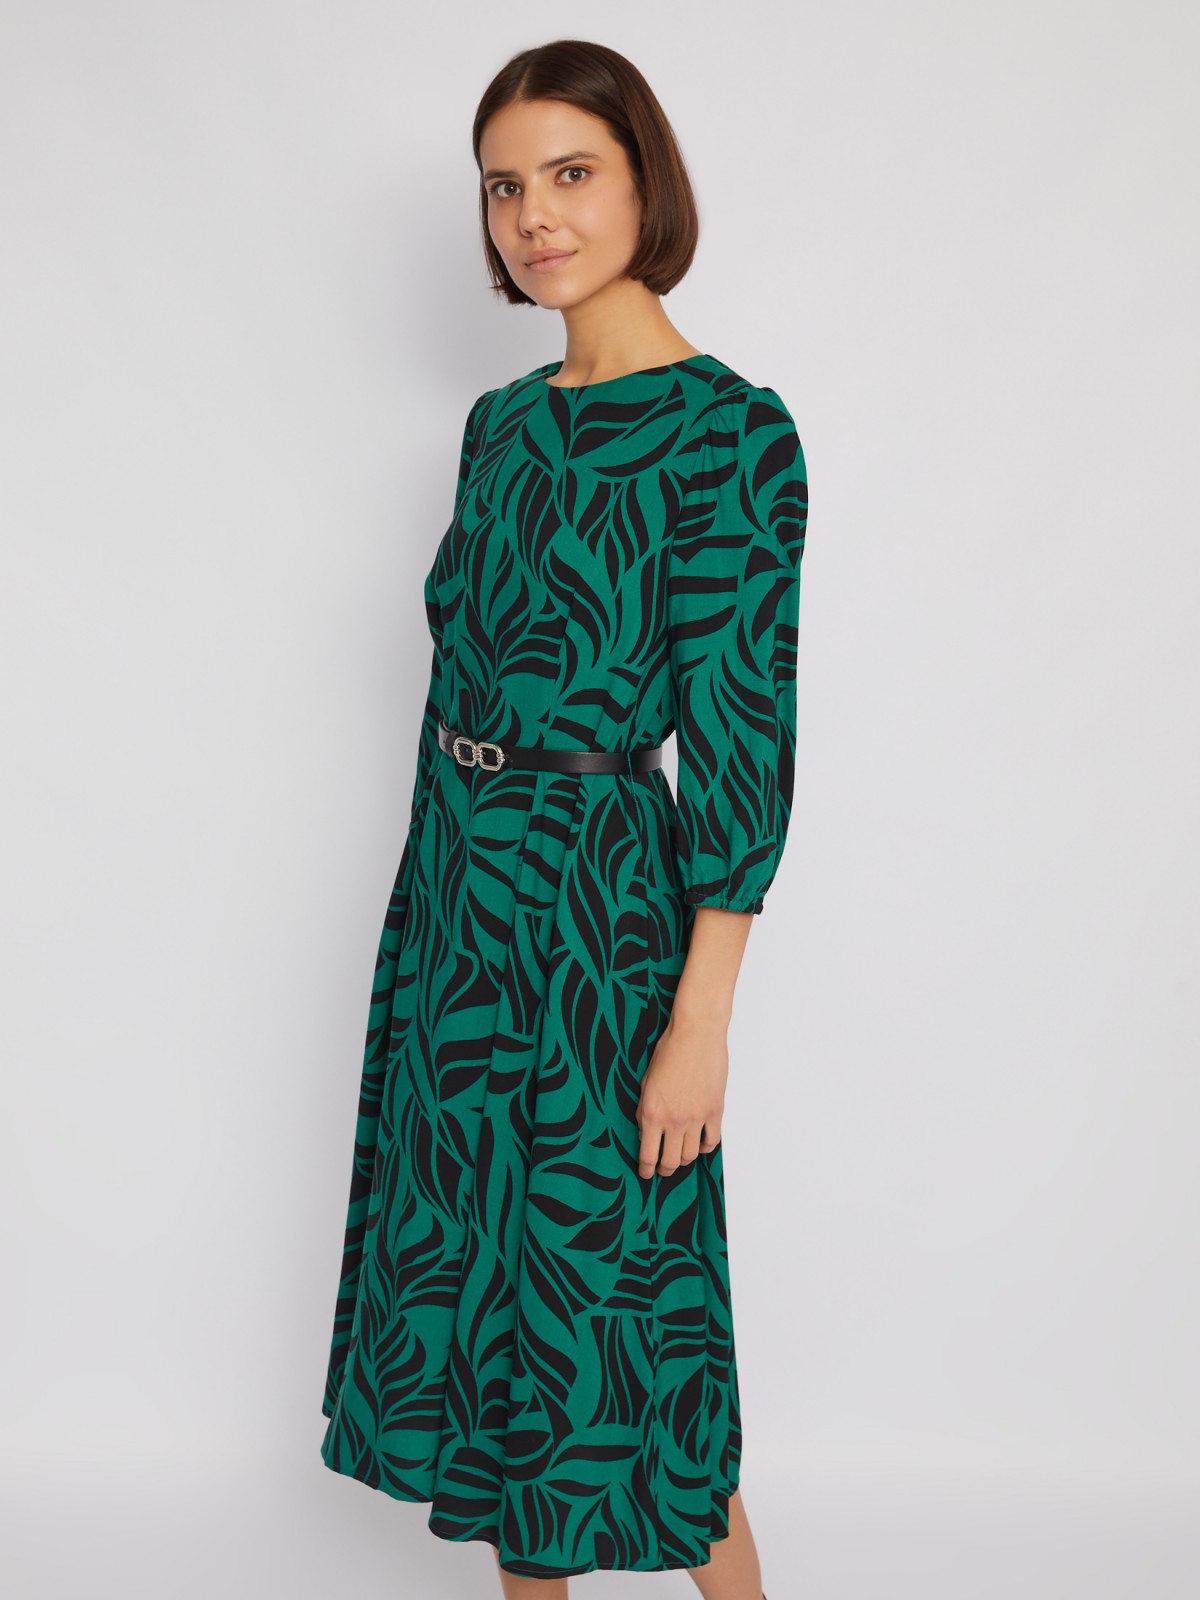 Платье длины миди из вискозы с принтом и ремнём на талию zolla 024128262132, цвет зеленый, размер S